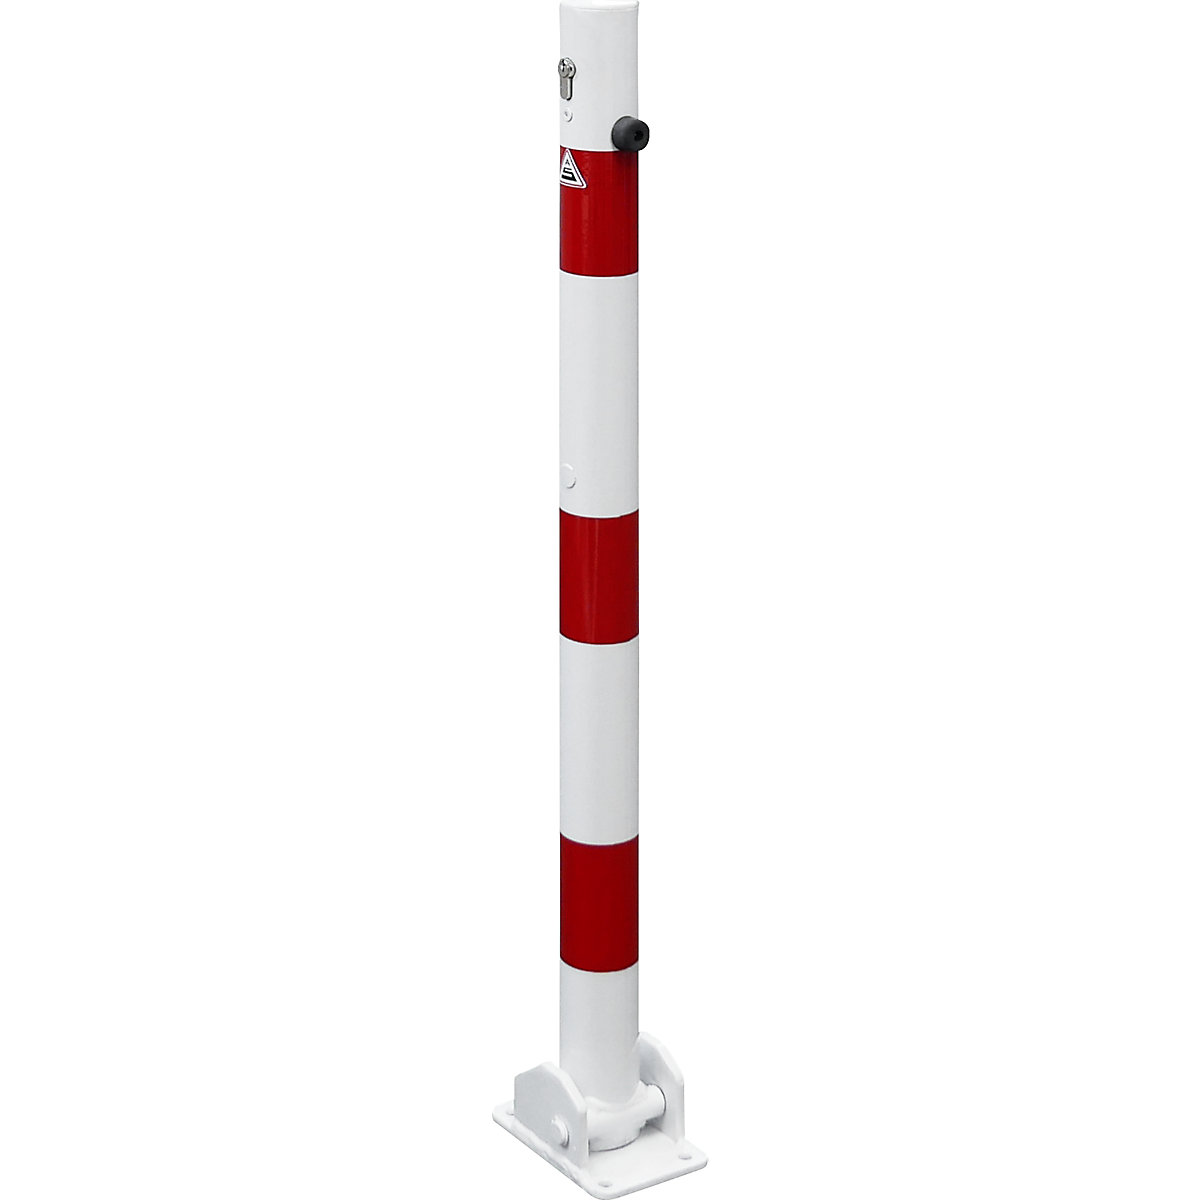 Stupić za ograđivanje, Ø 60 mm, u bijelo / crvenoj boji, s mogućnošću sklapanja i profilnim cilindrom, bez ušice-2